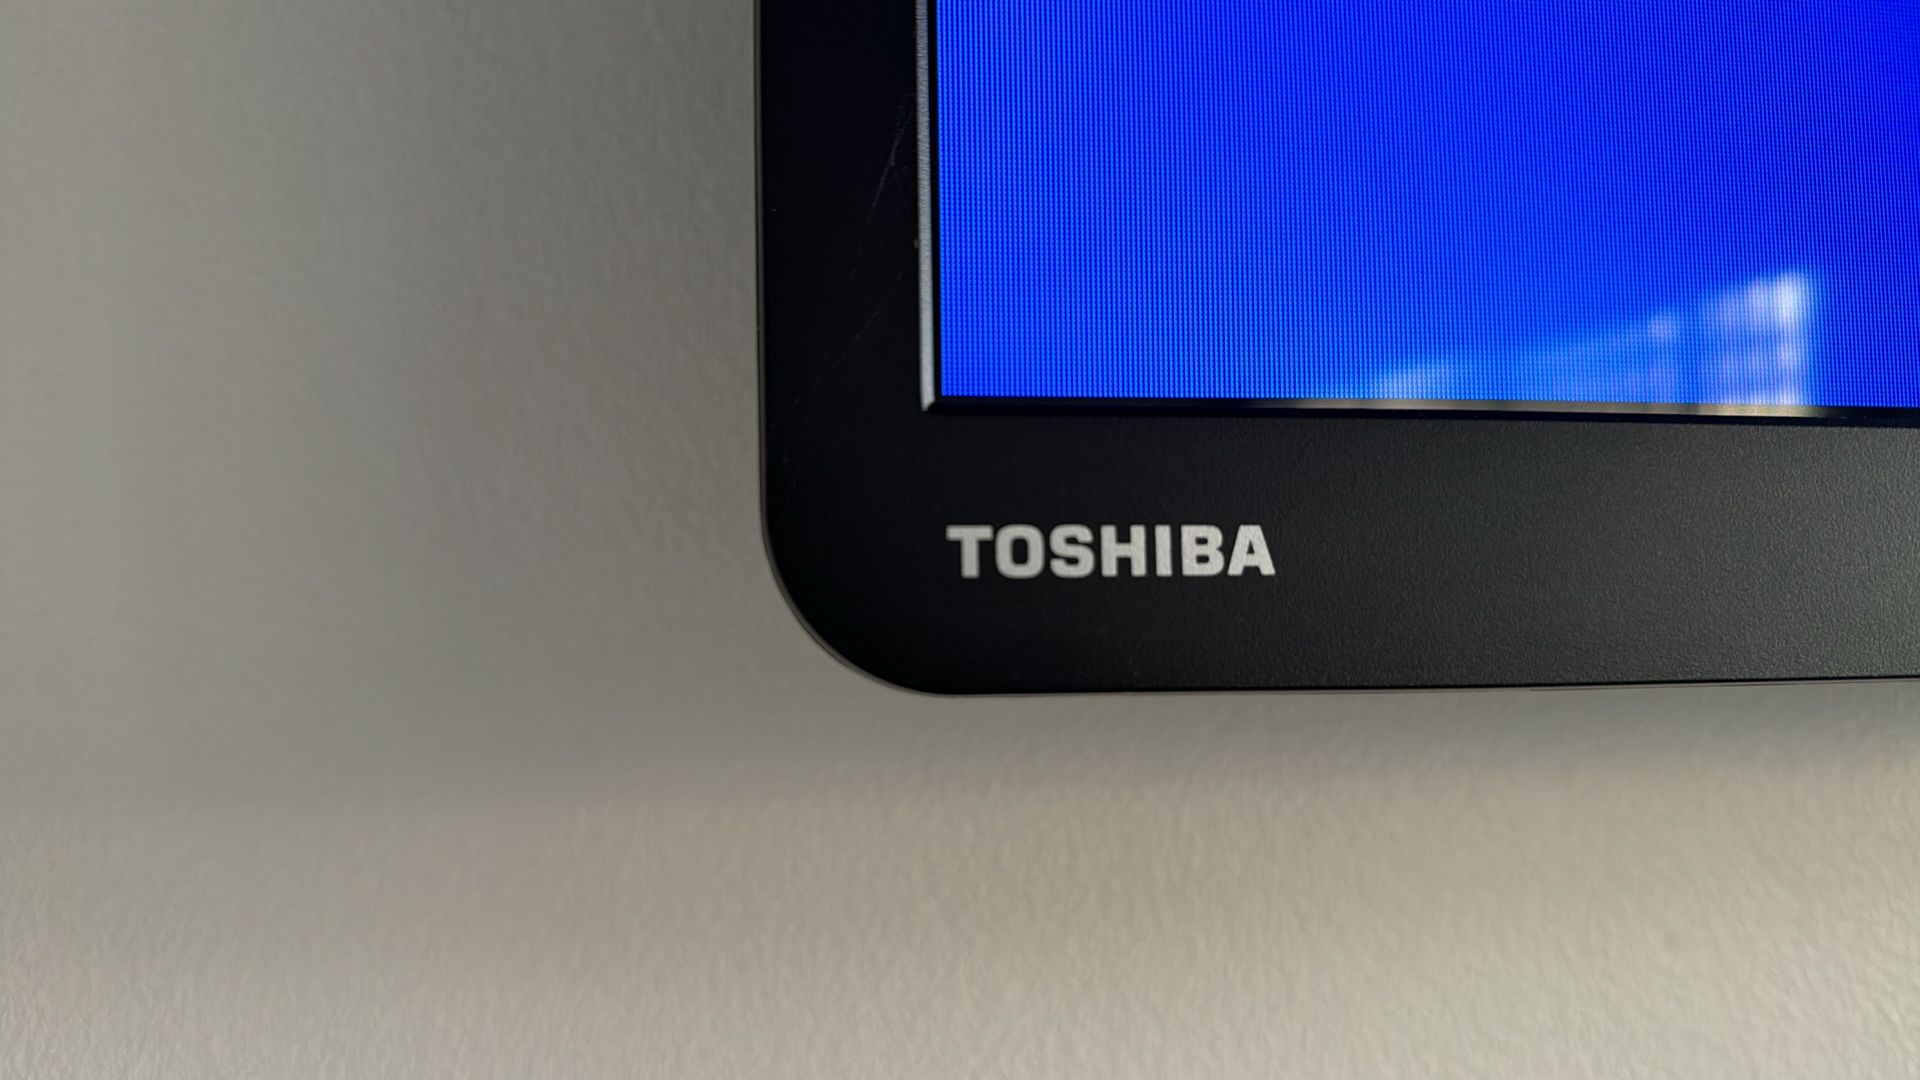 TOSHIBA Televison - Image 4 of 4